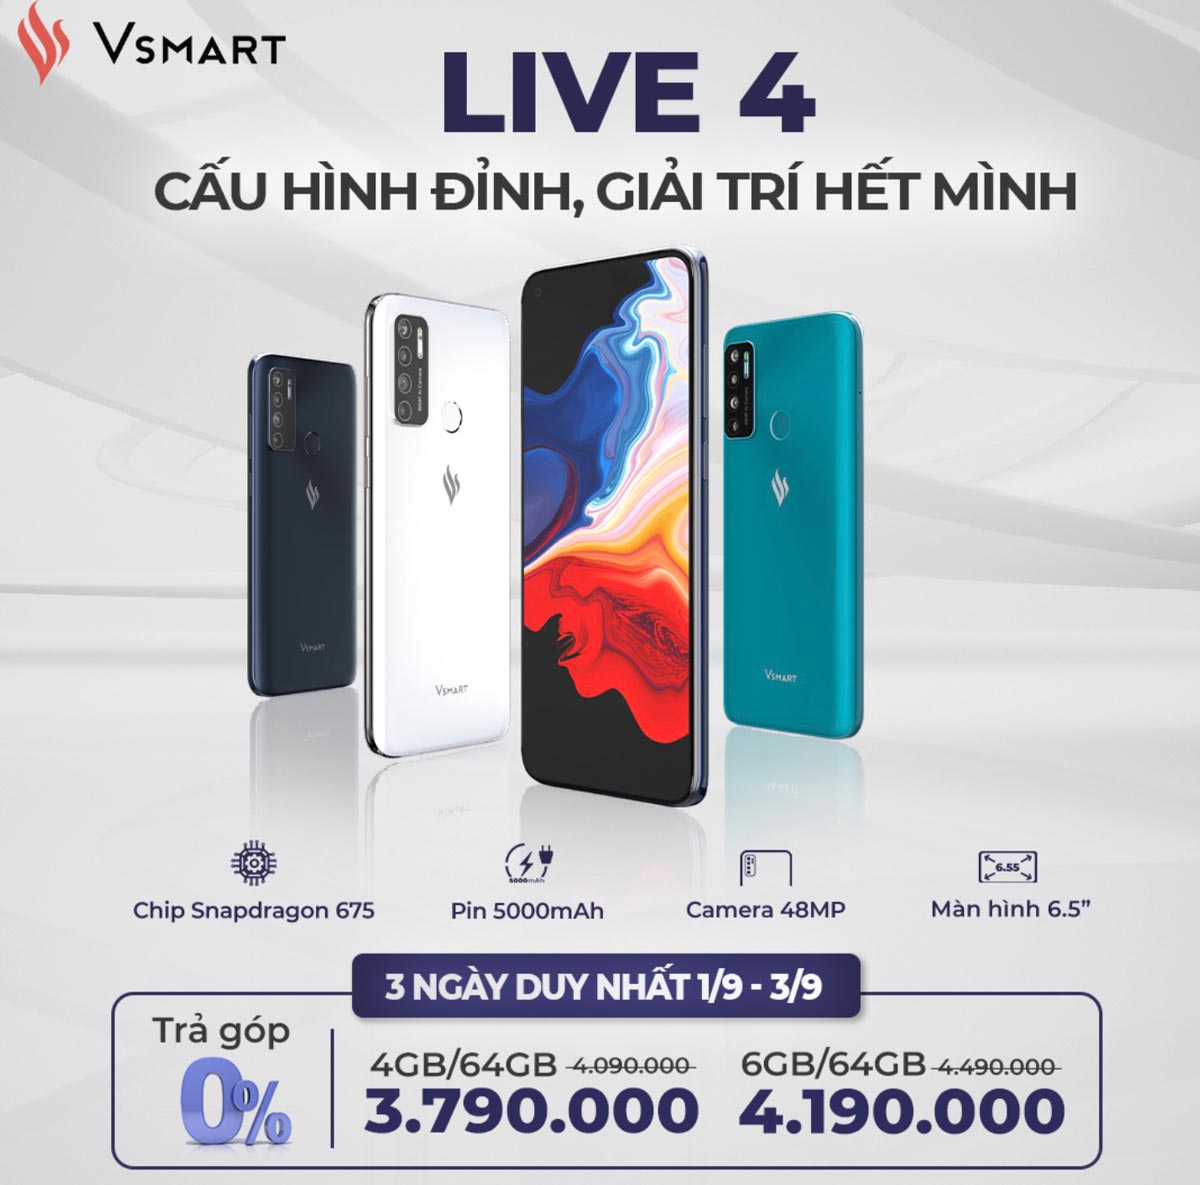 Vsmart Live 4 chính
thức ra mắt với Snapdragon 675, 4 camera, pin 5000mAh, giá
từ 4.1 triệu đồng